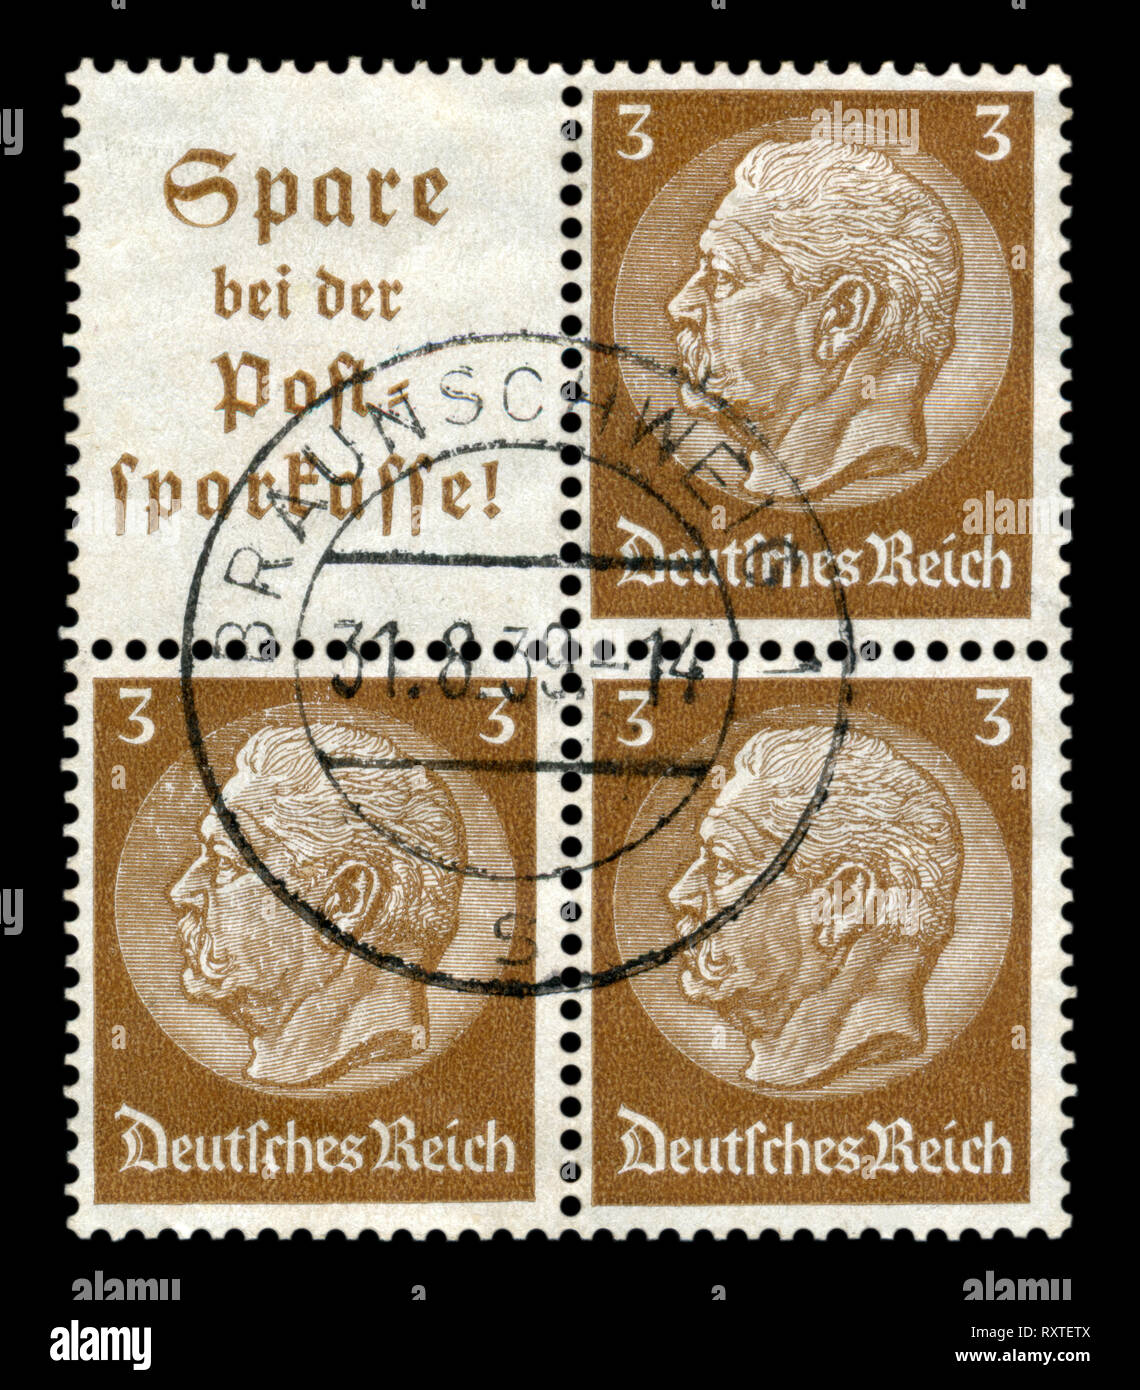 Deutschen Historischen Block mit drei Briefmarken: Paul von Hindenburg - Serie Medaillons 1933-1936 Ausgabe, Braunschweig Poststempel 1938, Deutschland, das Dritte Reich Stockfoto